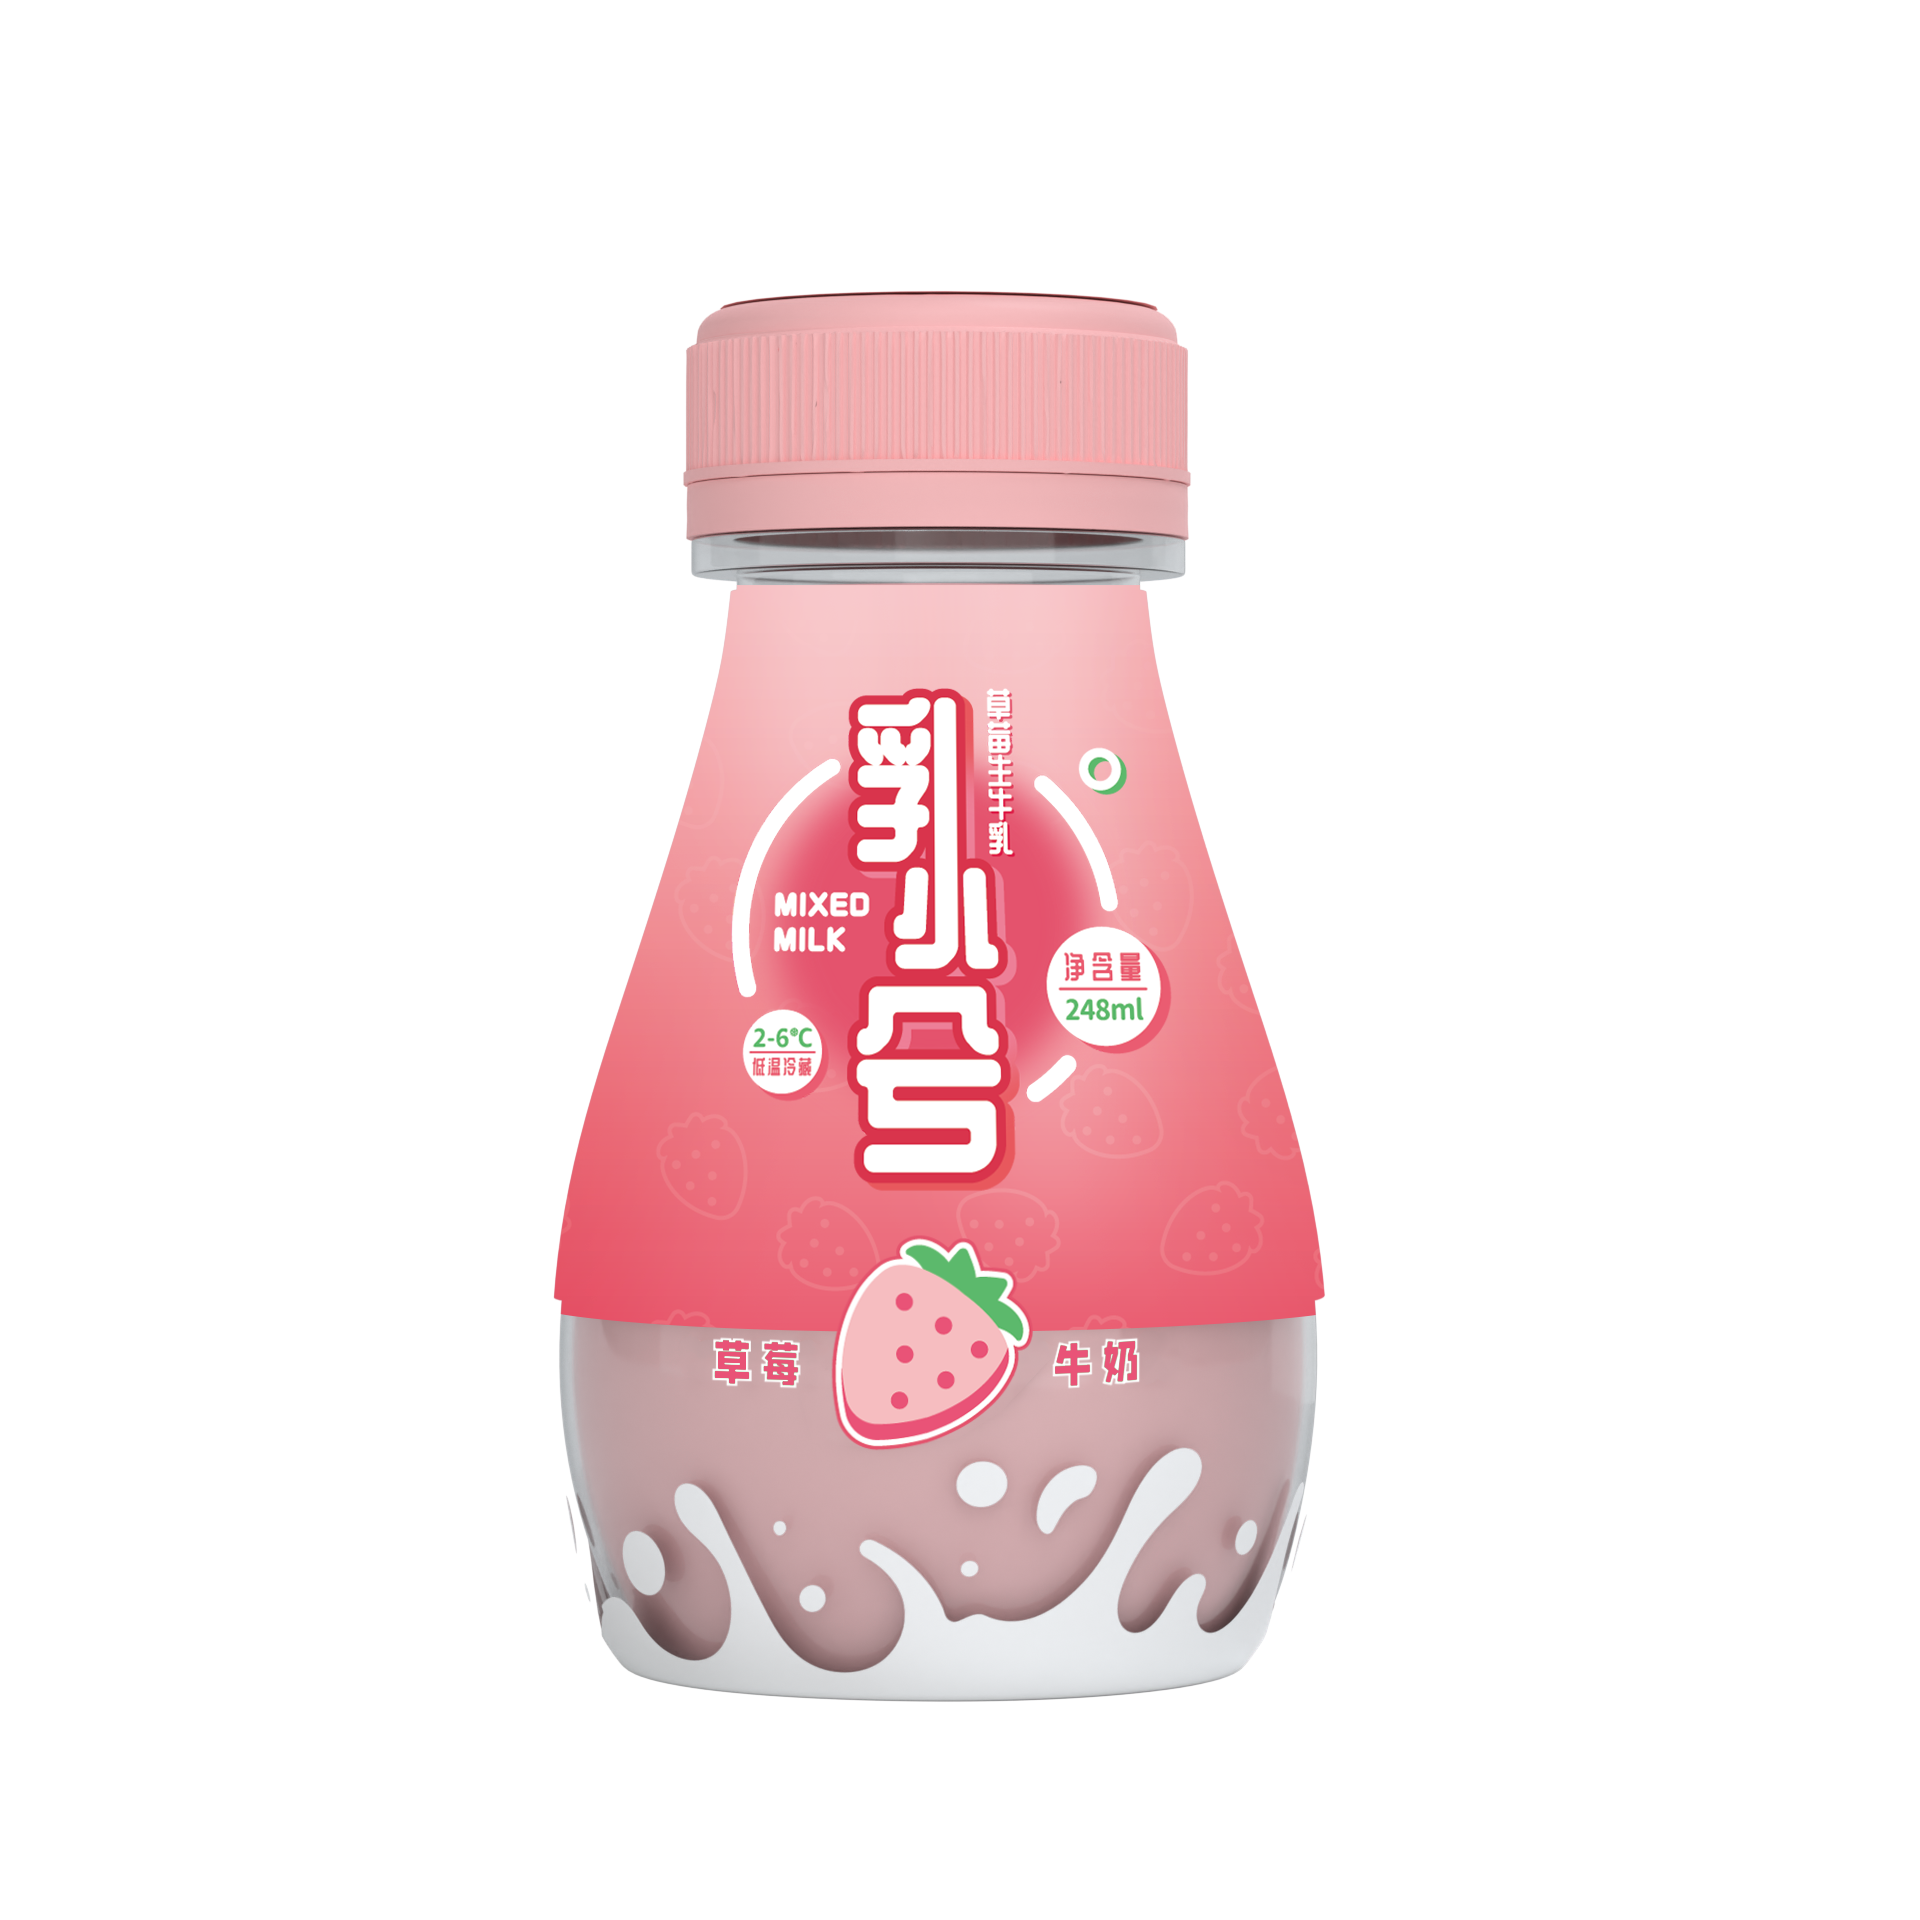 ruxiaoxi strawberry milk